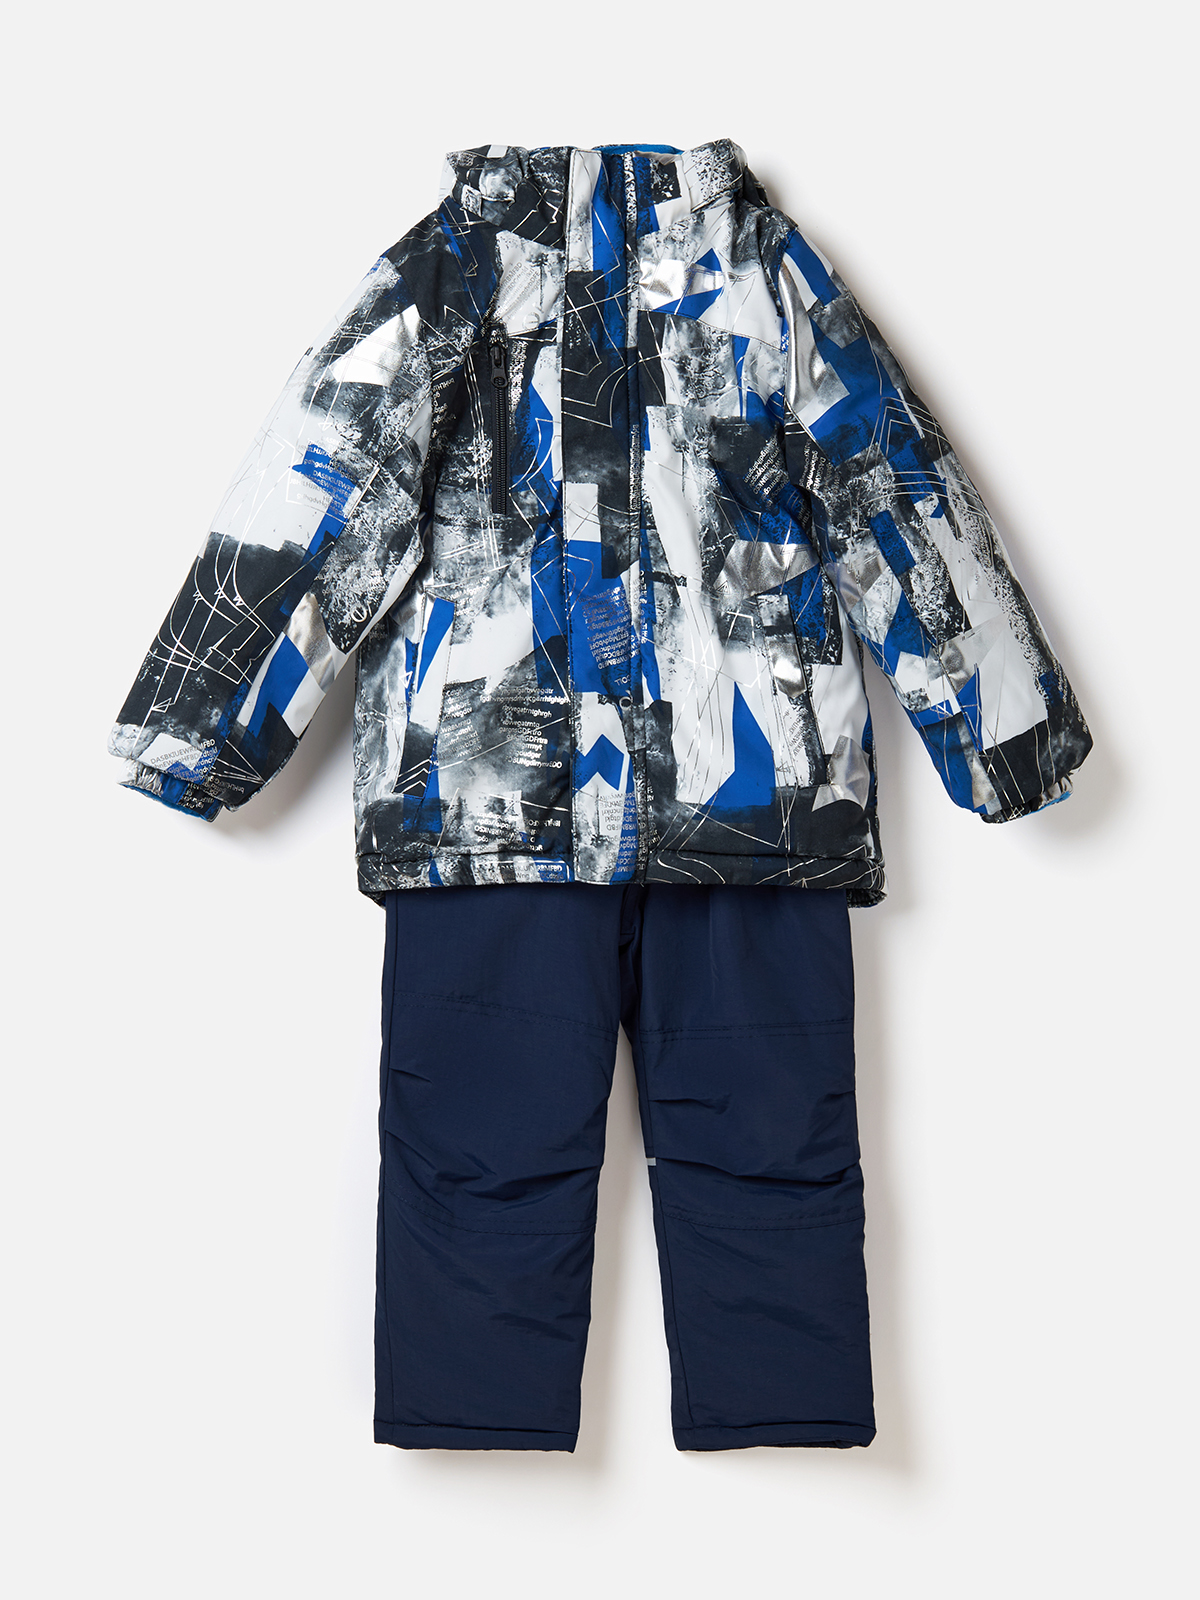 Комплект одежды для мальчиков, куртка и штаны, размер 110, 222004-1M2